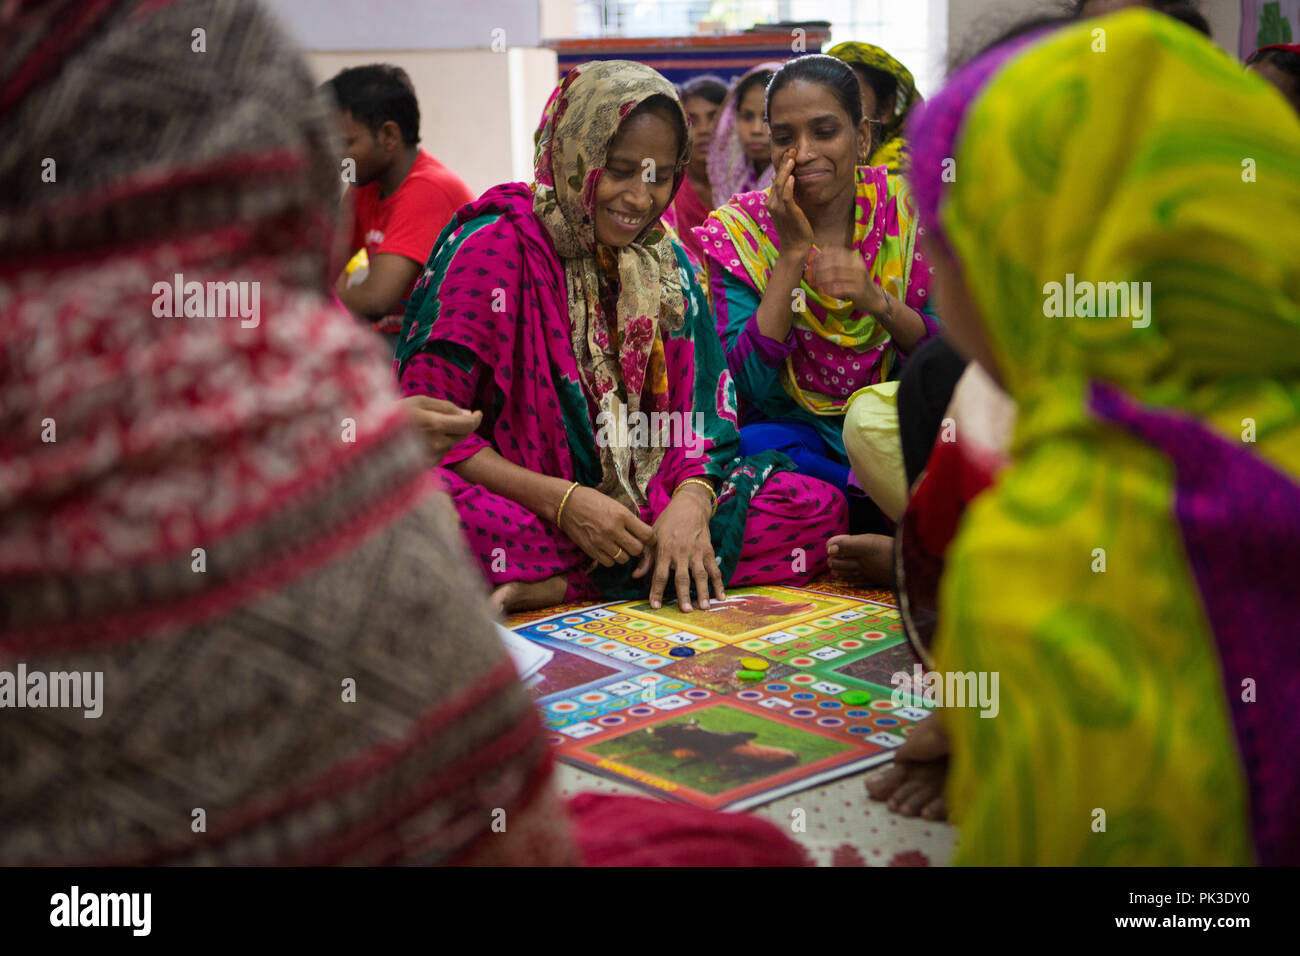 Les travailleurs du vêtement de rire pendant qu'ils jouent un jeu au cours d'un atelier à Dhaka, au Bangladesh. Banque D'Images